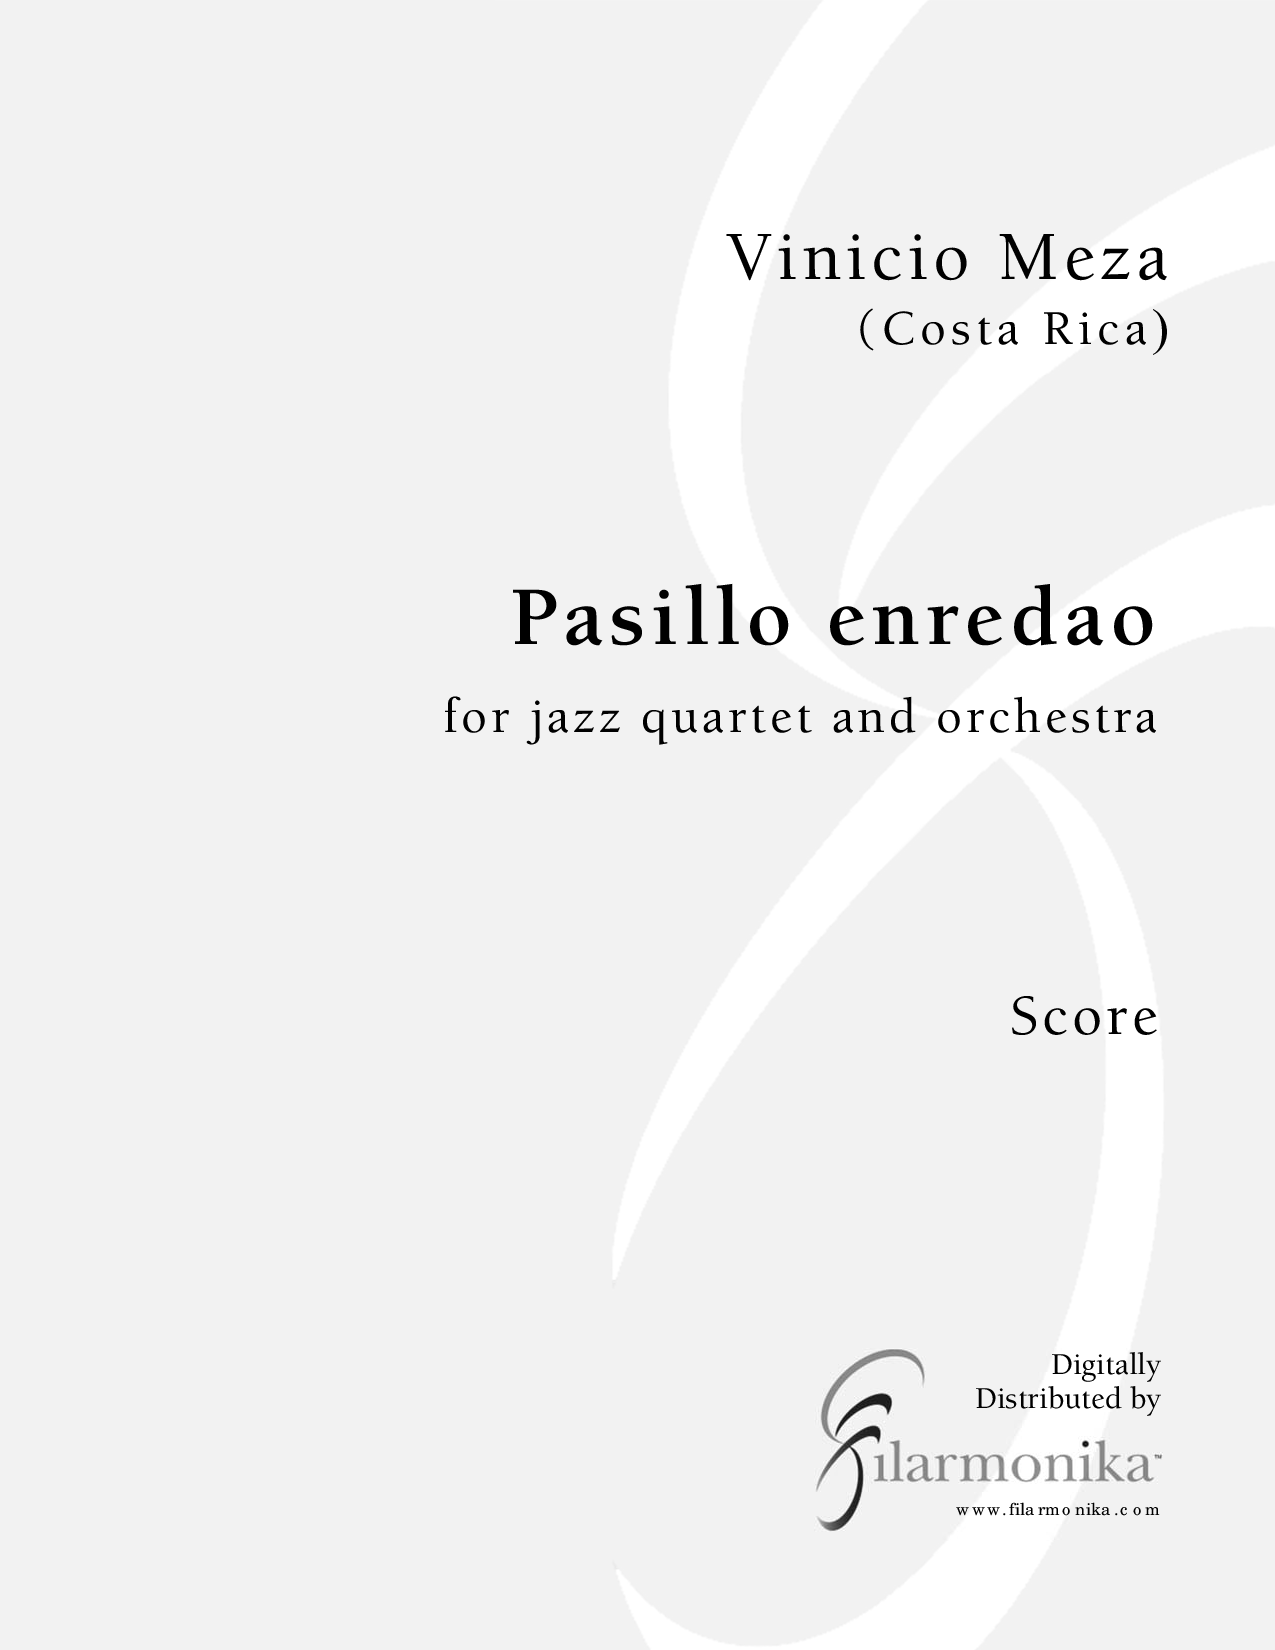 Pasillo enredao, for jazz quartet and orchestra